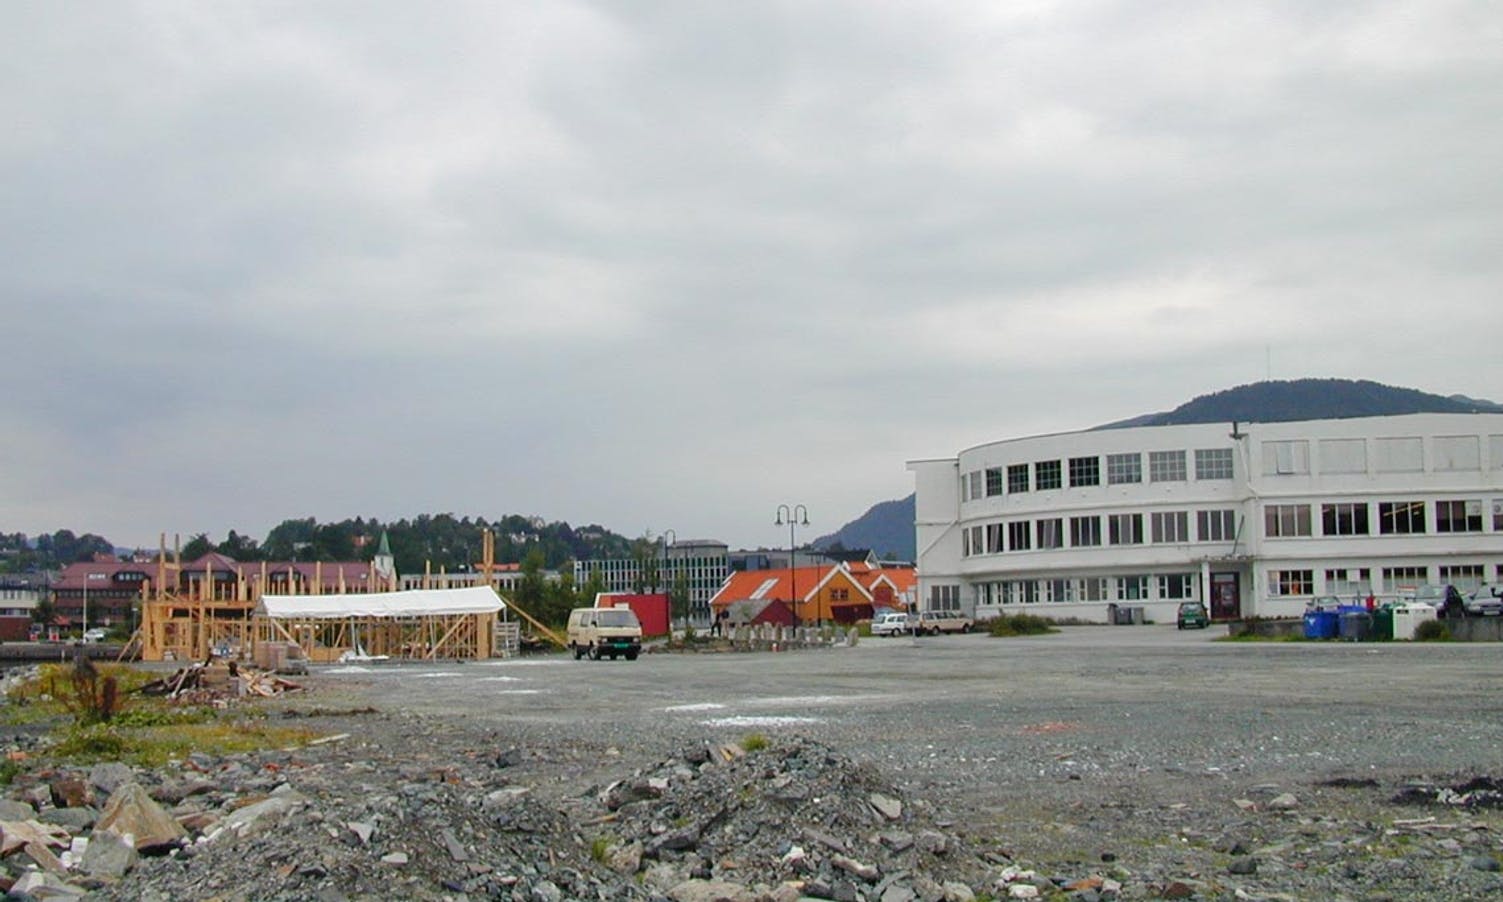 Irisgården i august 2001, før det kom leilegheiter på taket og på fyllinga ut mot Steinneset. (Foto: Kjeil Vasby Bruarøy)